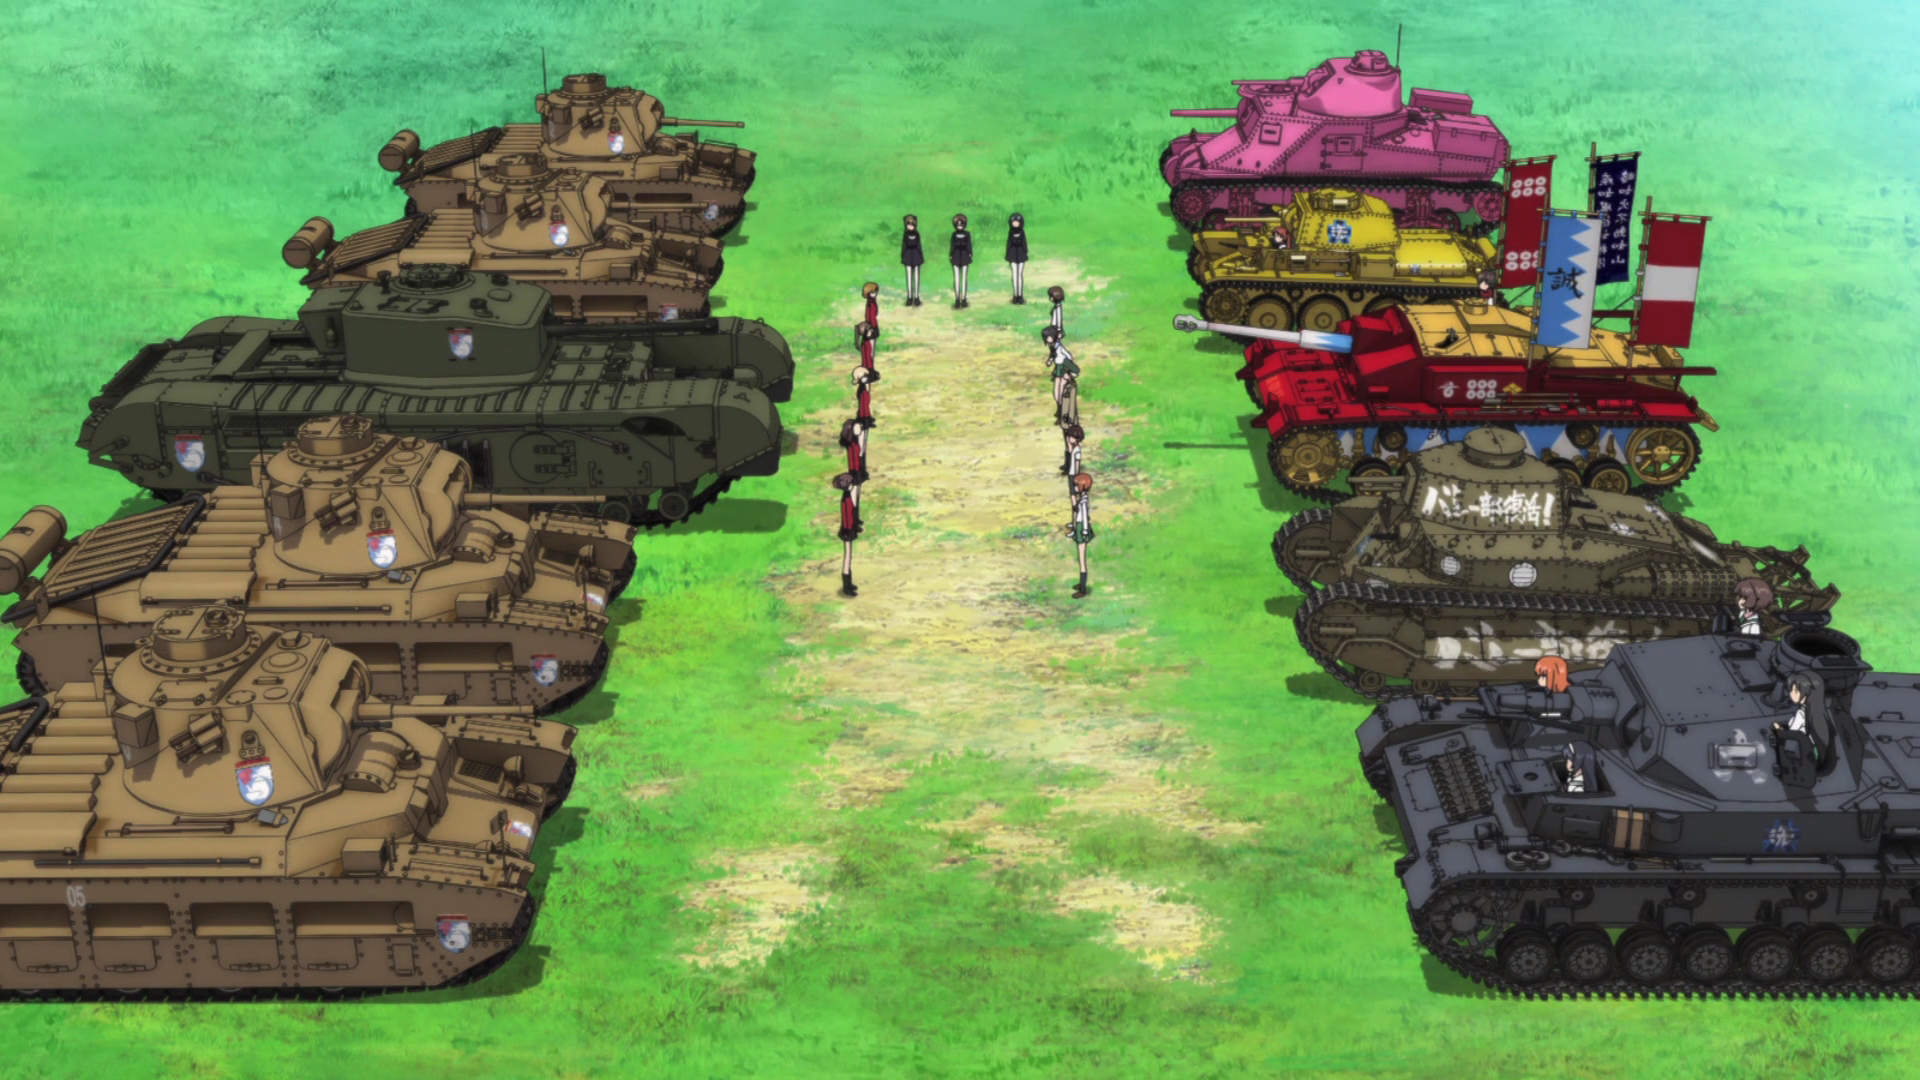 Anime Girls und Panzer Wallpaper